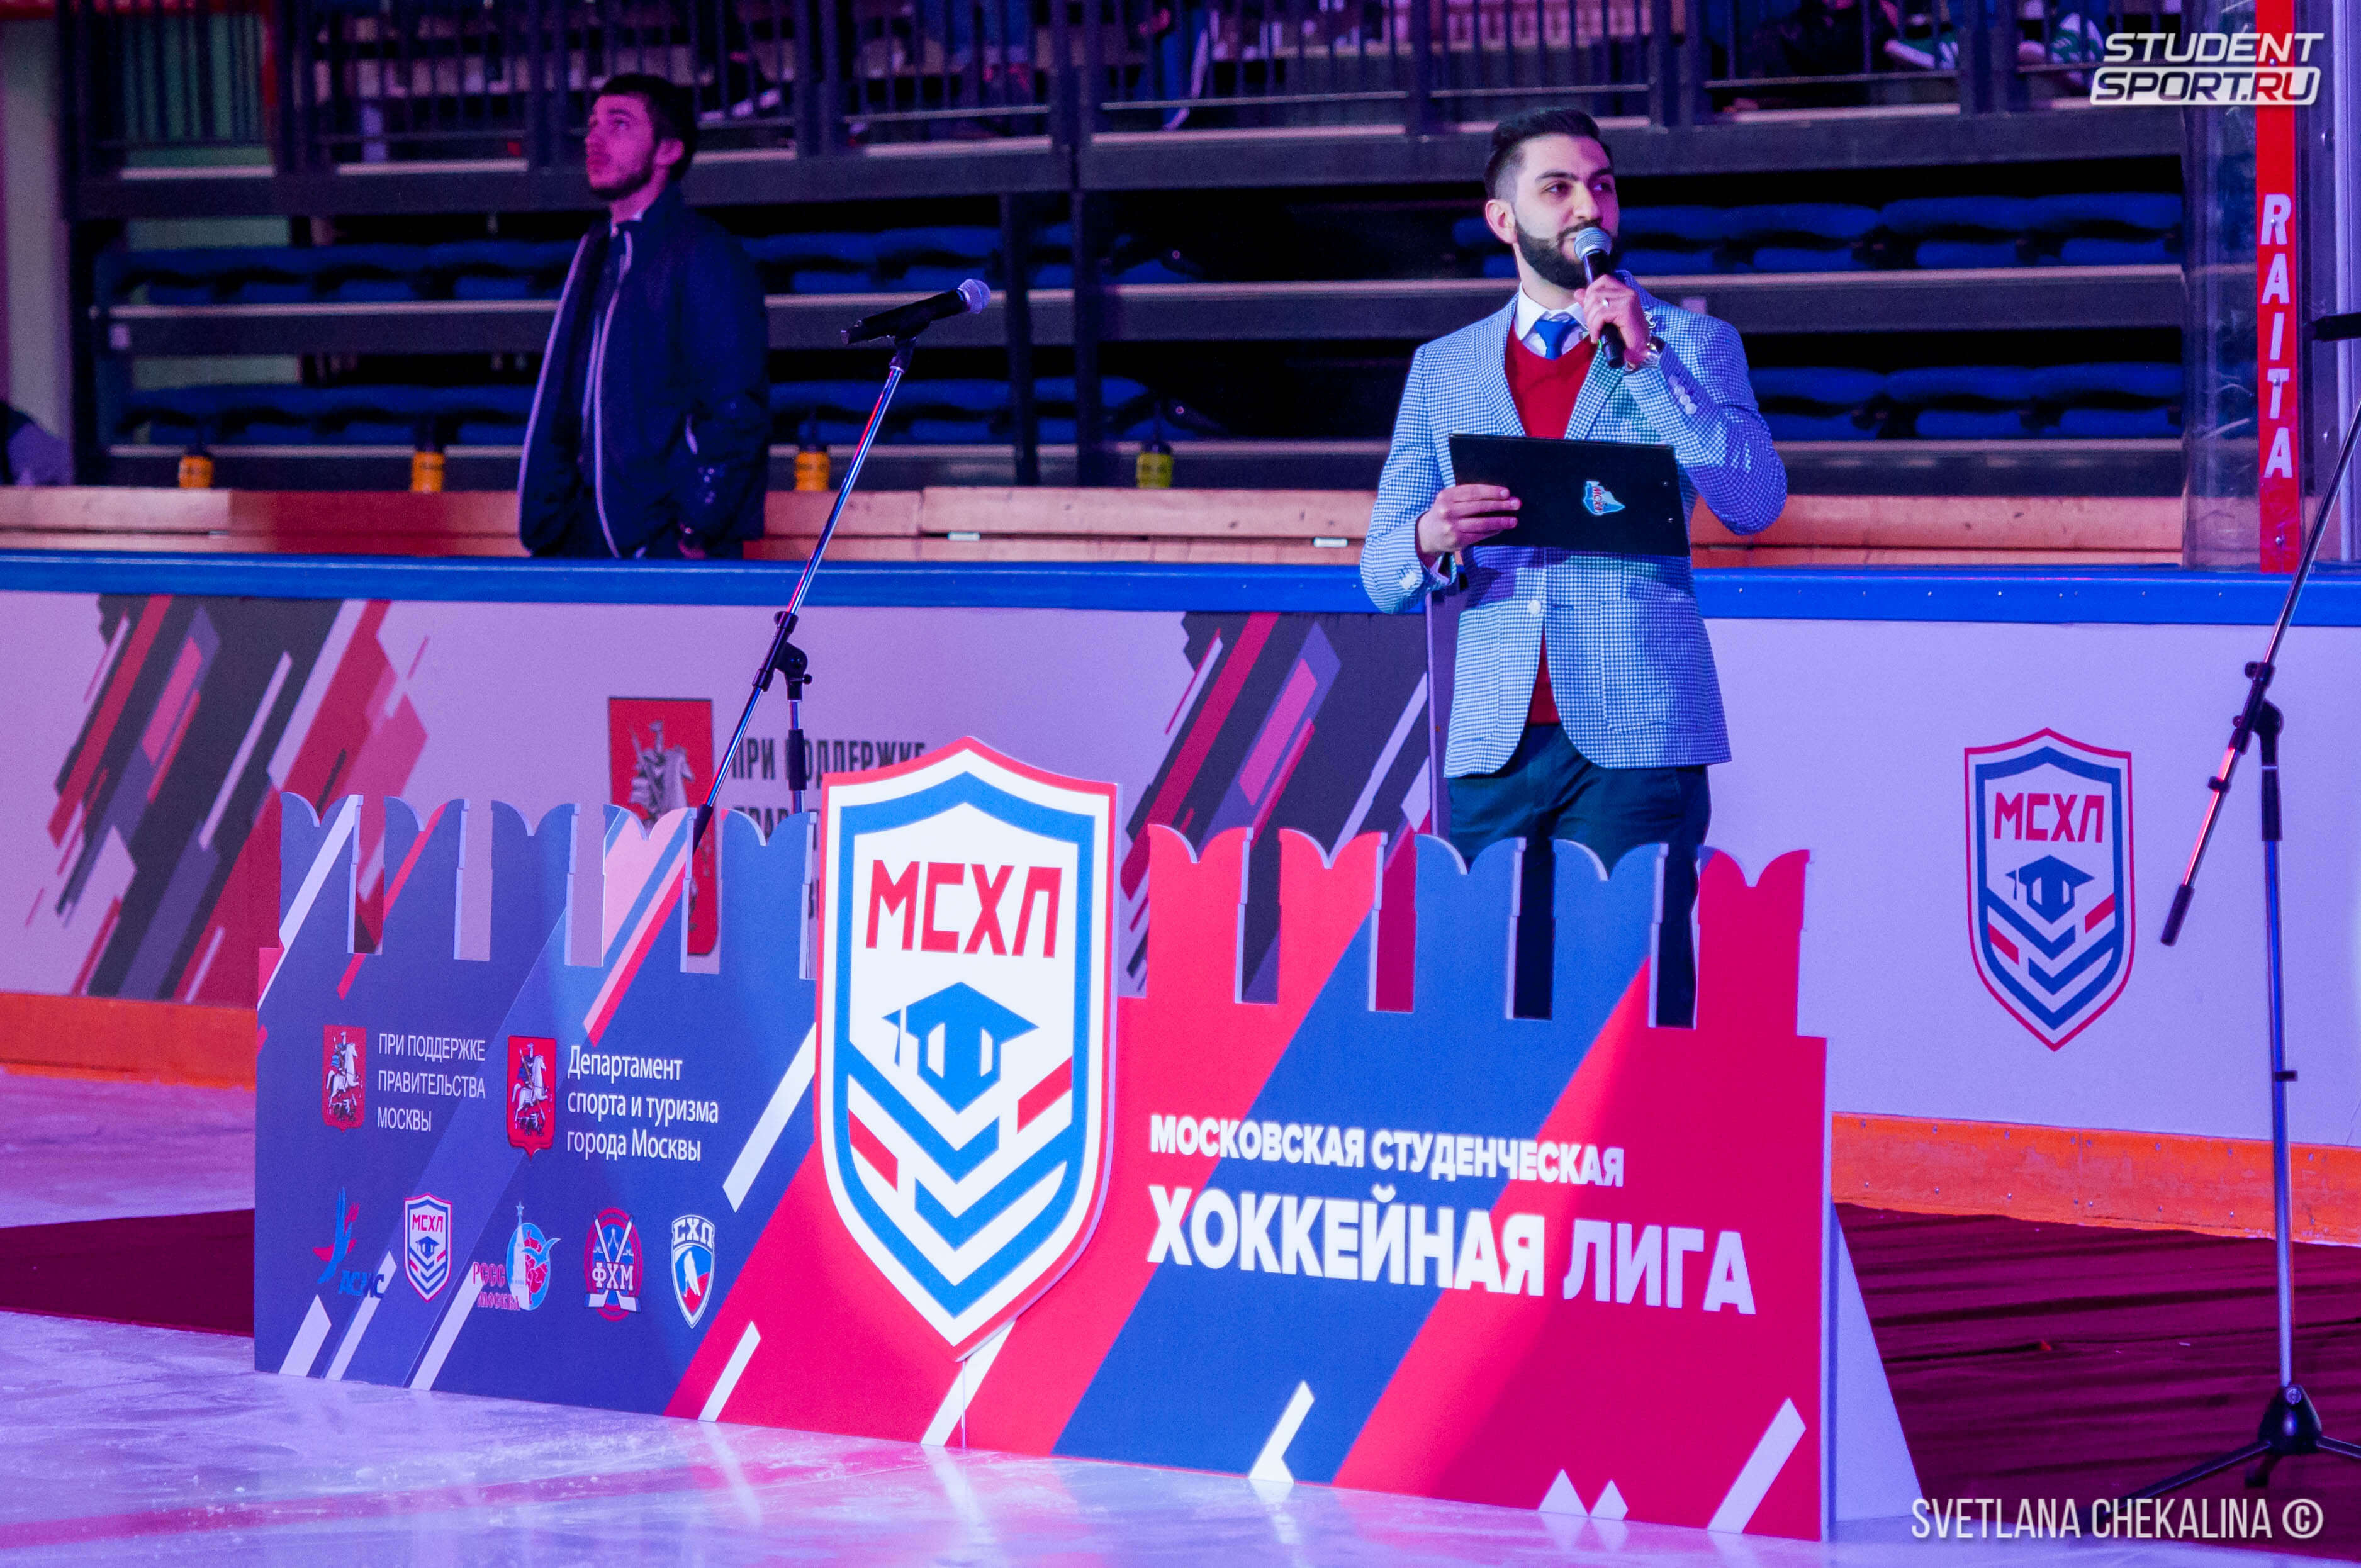 Финальный матч Московской Студенческой Хоккейной Лиги при поддержке Департамента спорта и туризма города Москвы